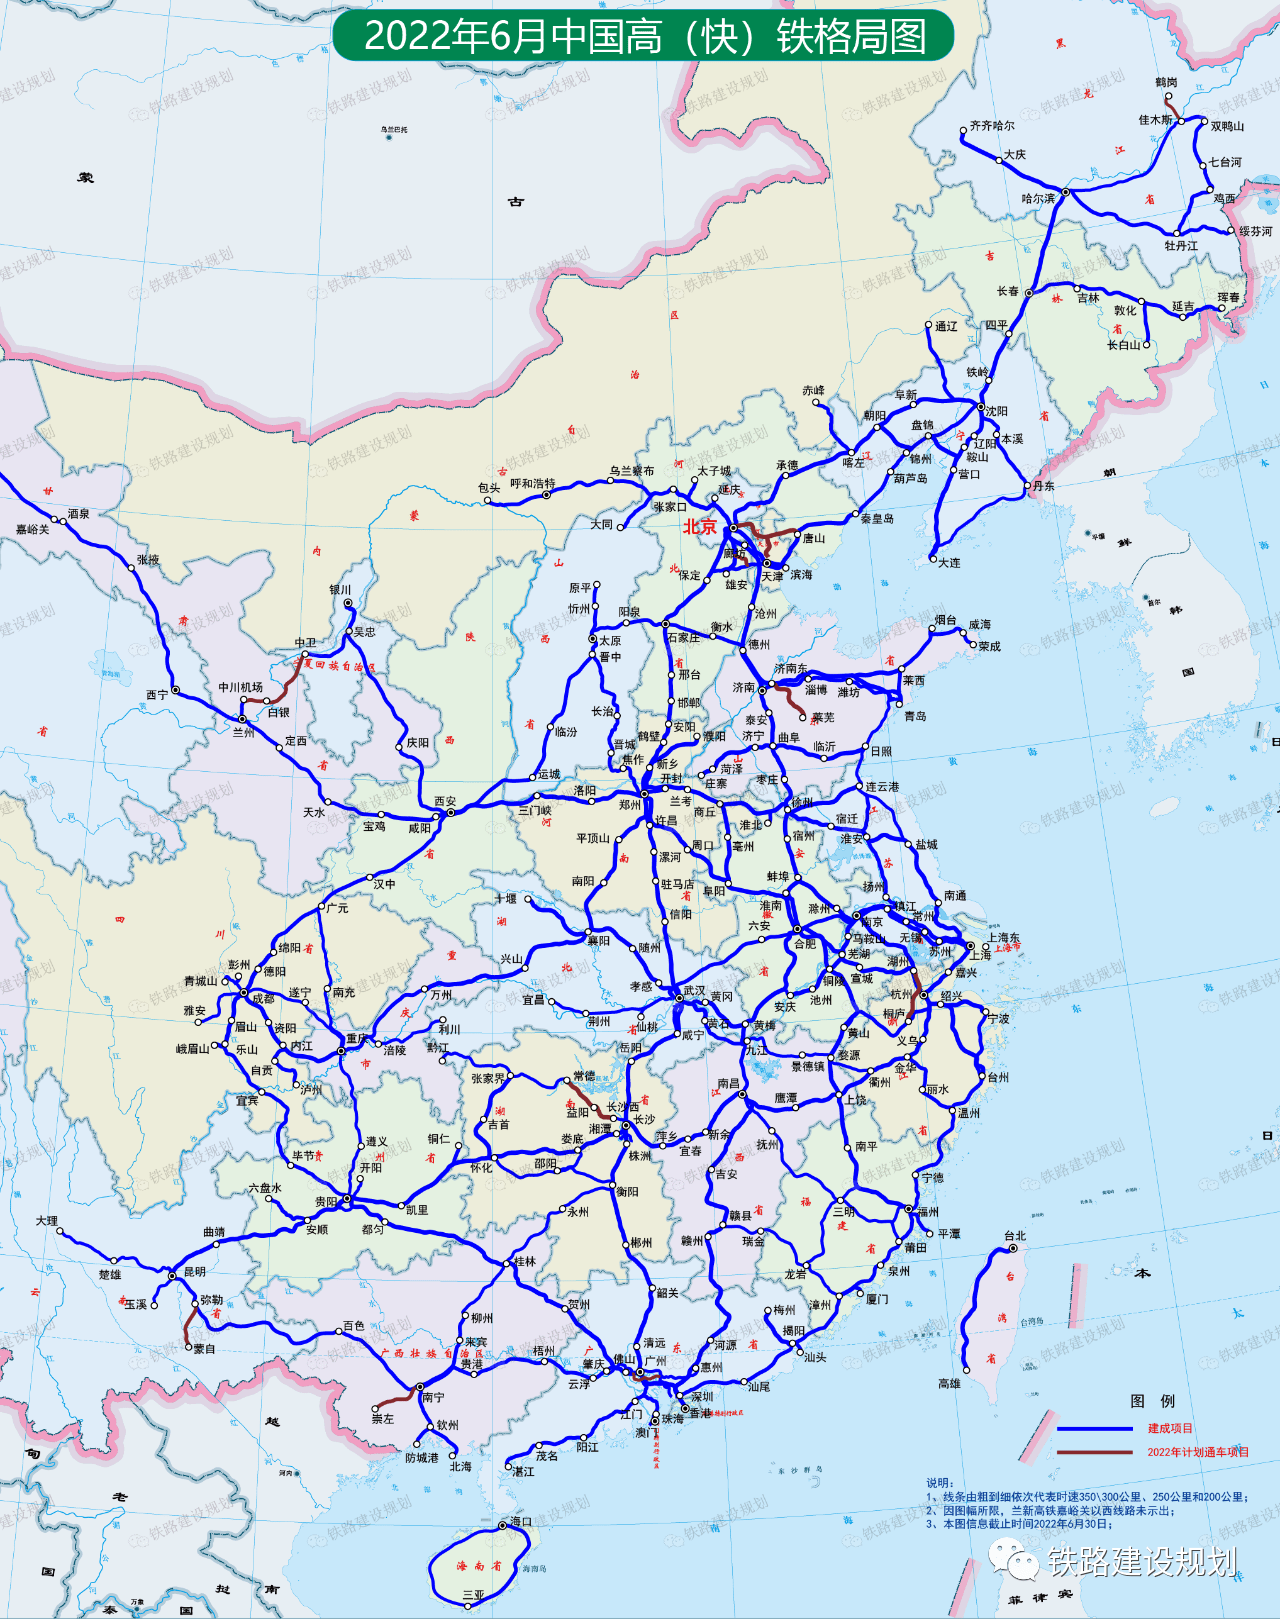 各省市区高铁里程排行榜及详细线路清单(2022年6月)